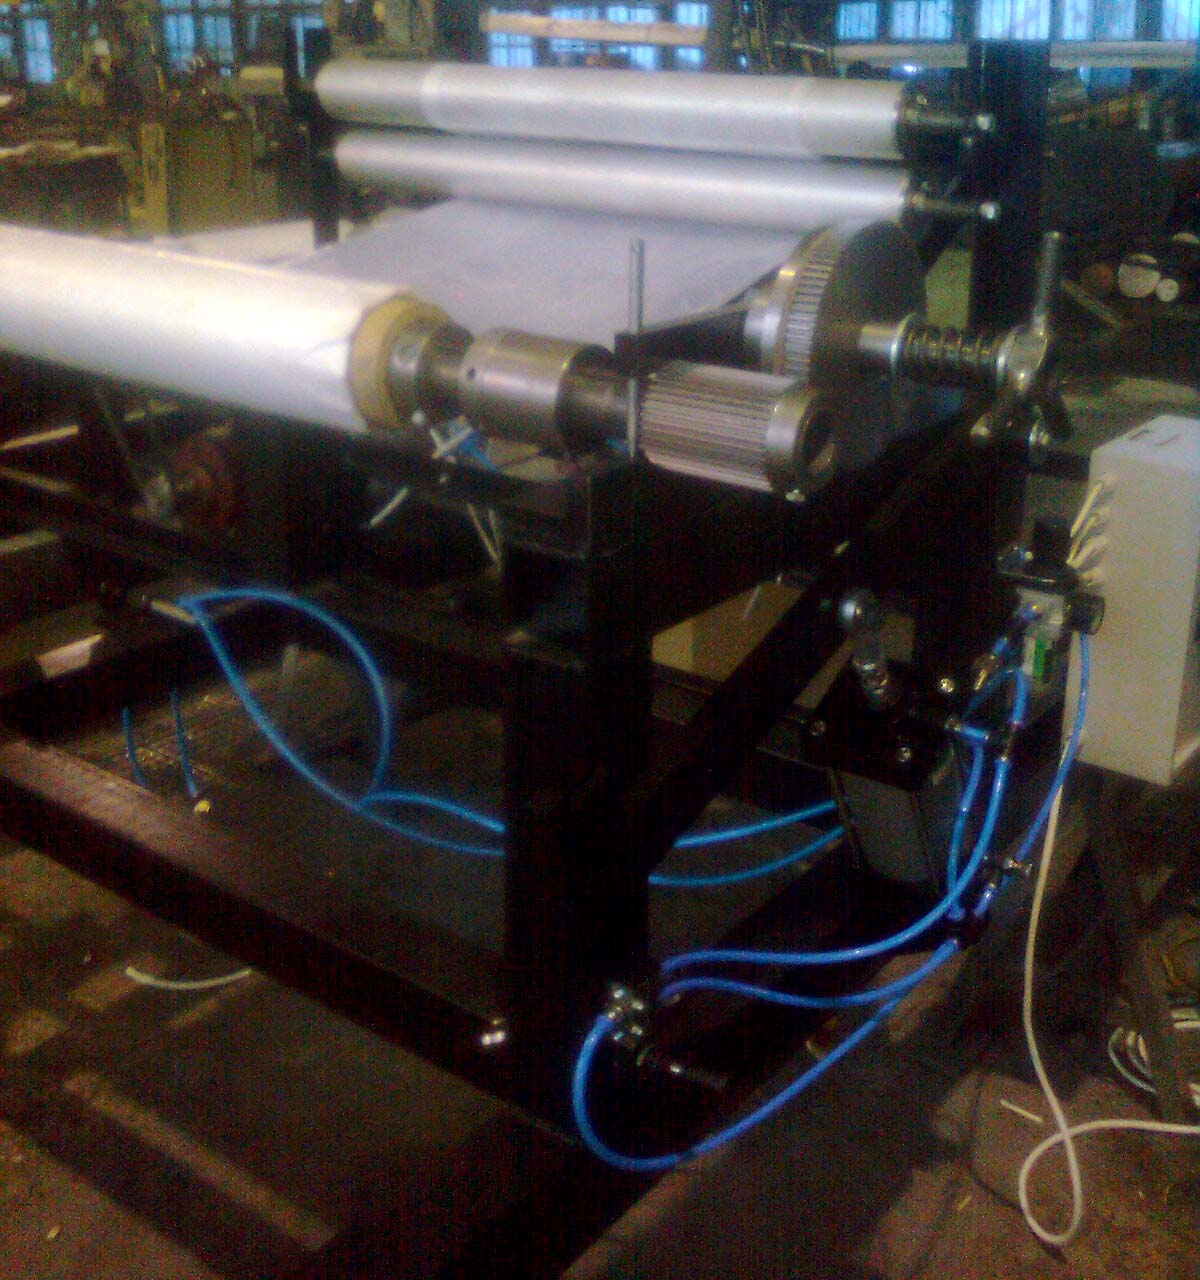 фотография размотки для рулонов пленки Ф1000мм с пневматическим подъёмом рулона на станке складывания пленки из полотна в полурукав